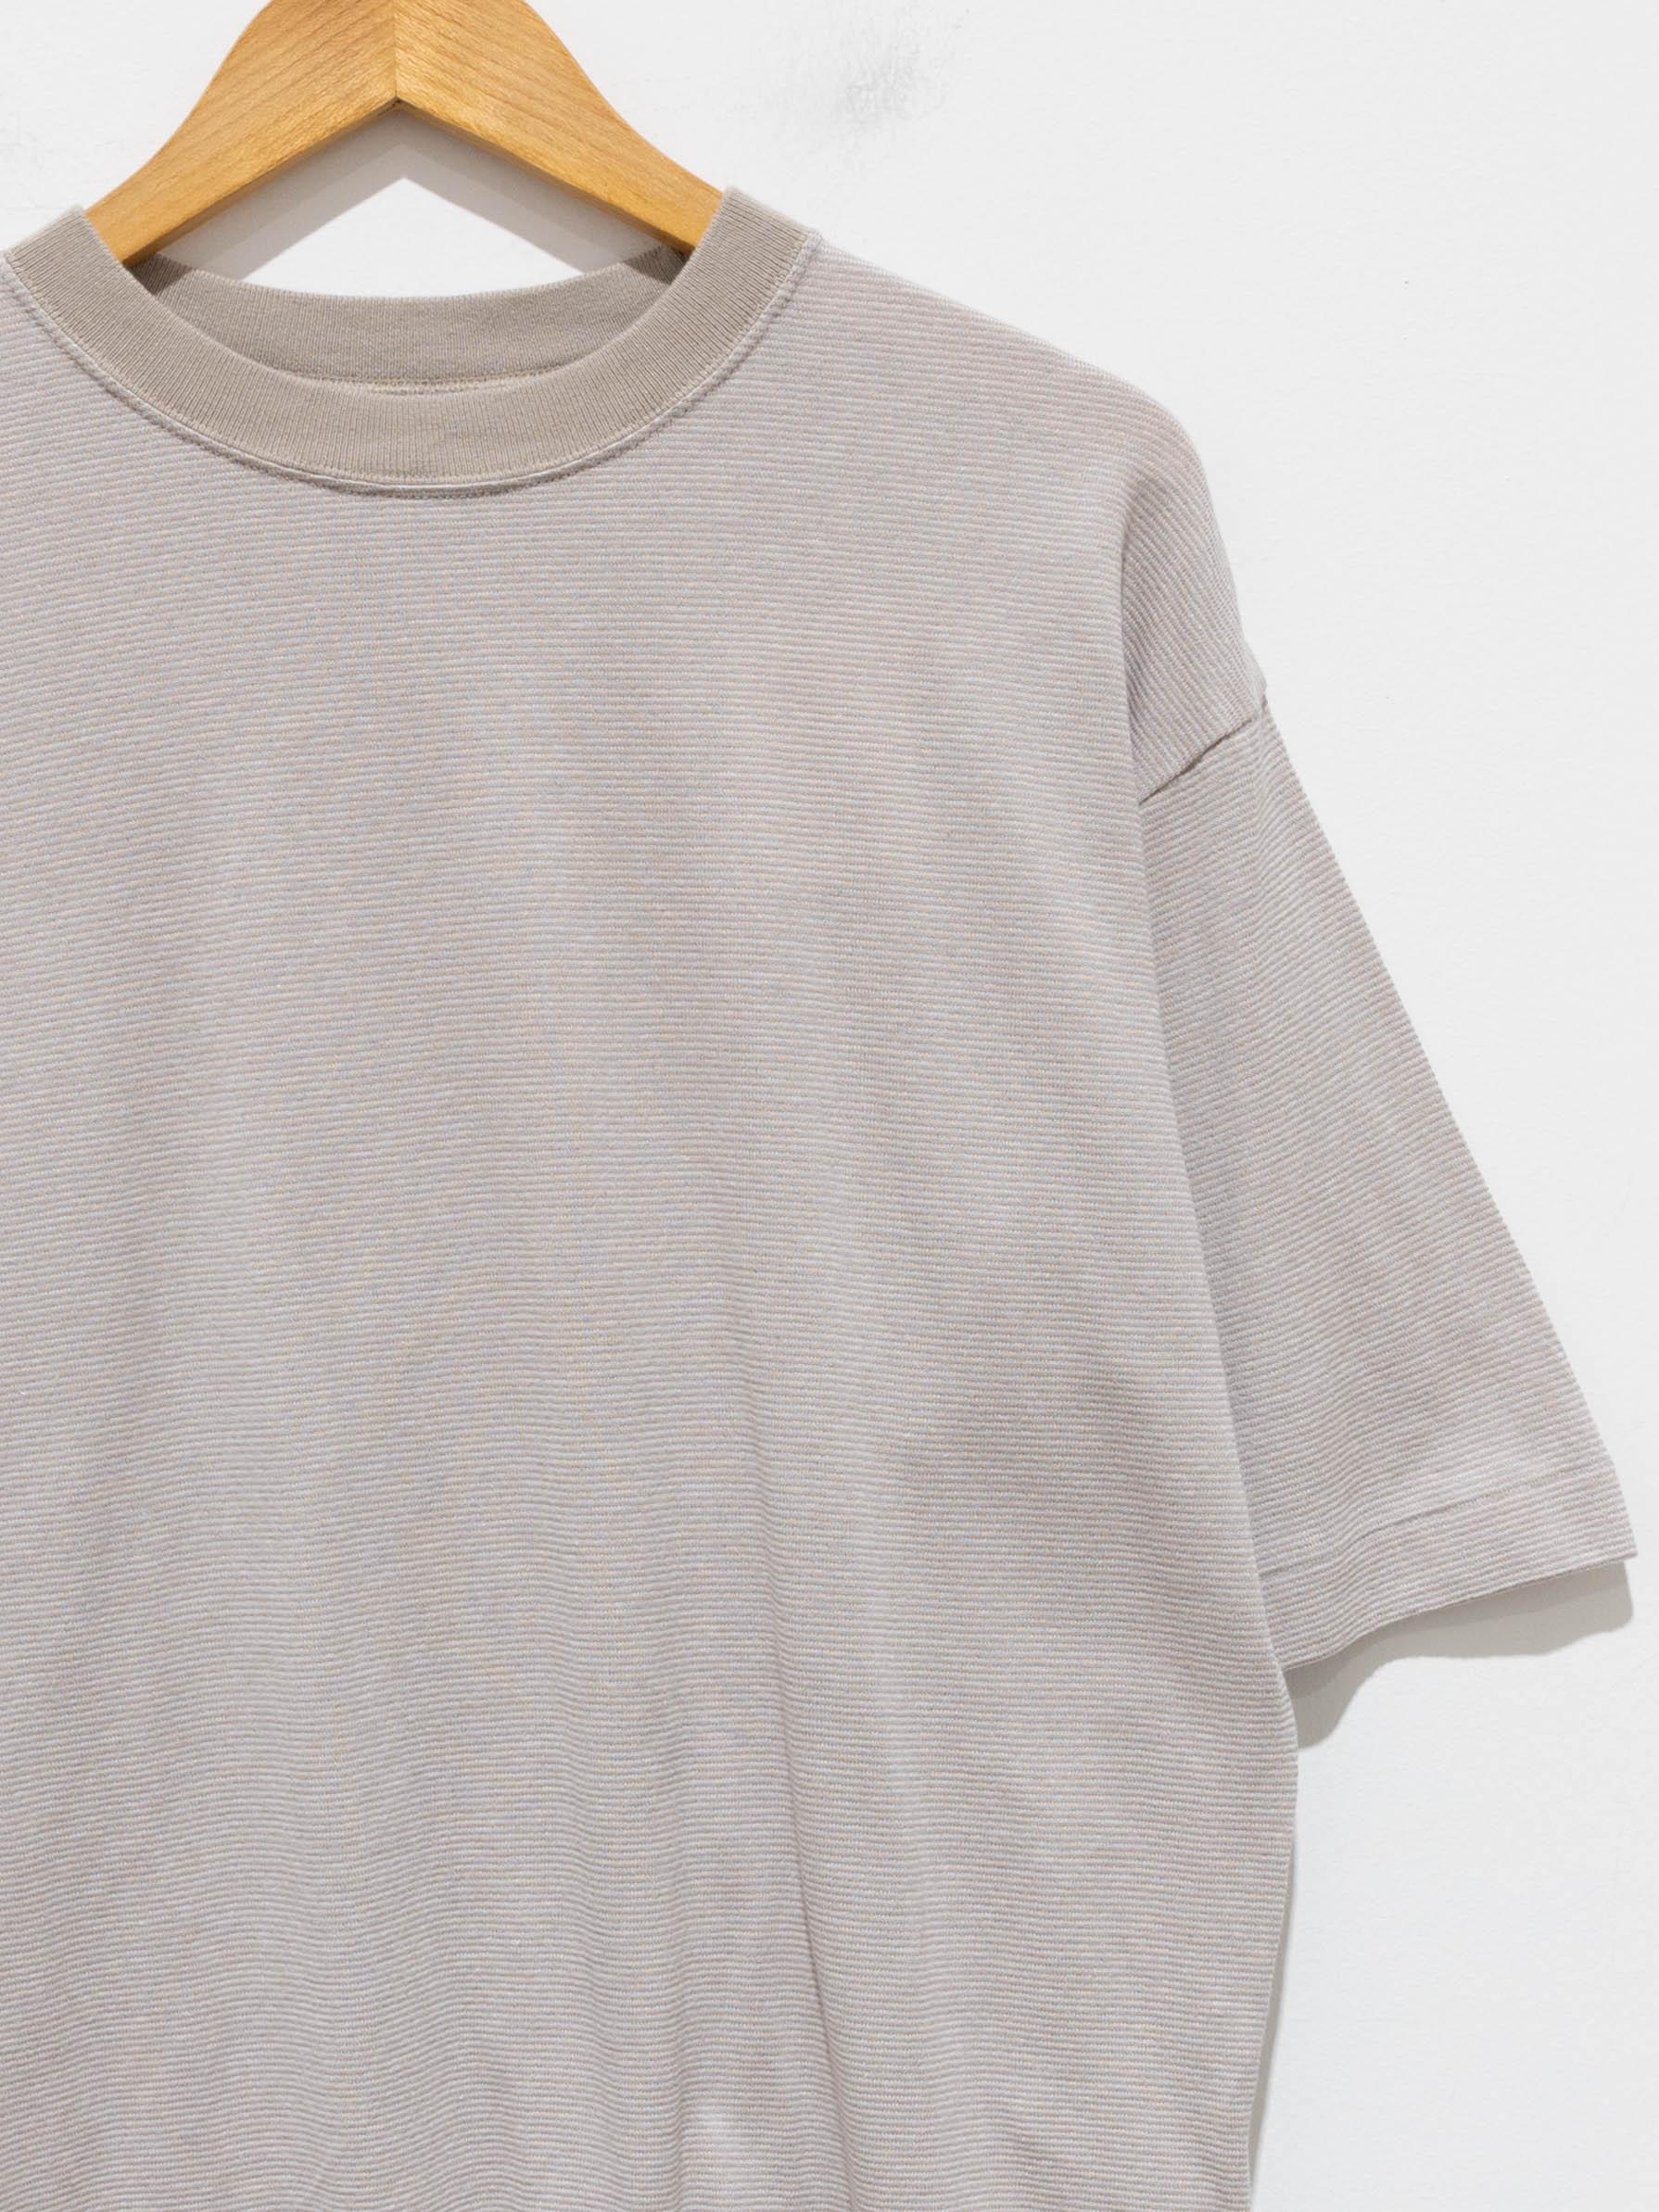 Namu Shop - Phlannel Cotton Linen Links Border T-Shirt (Women's) - Beige